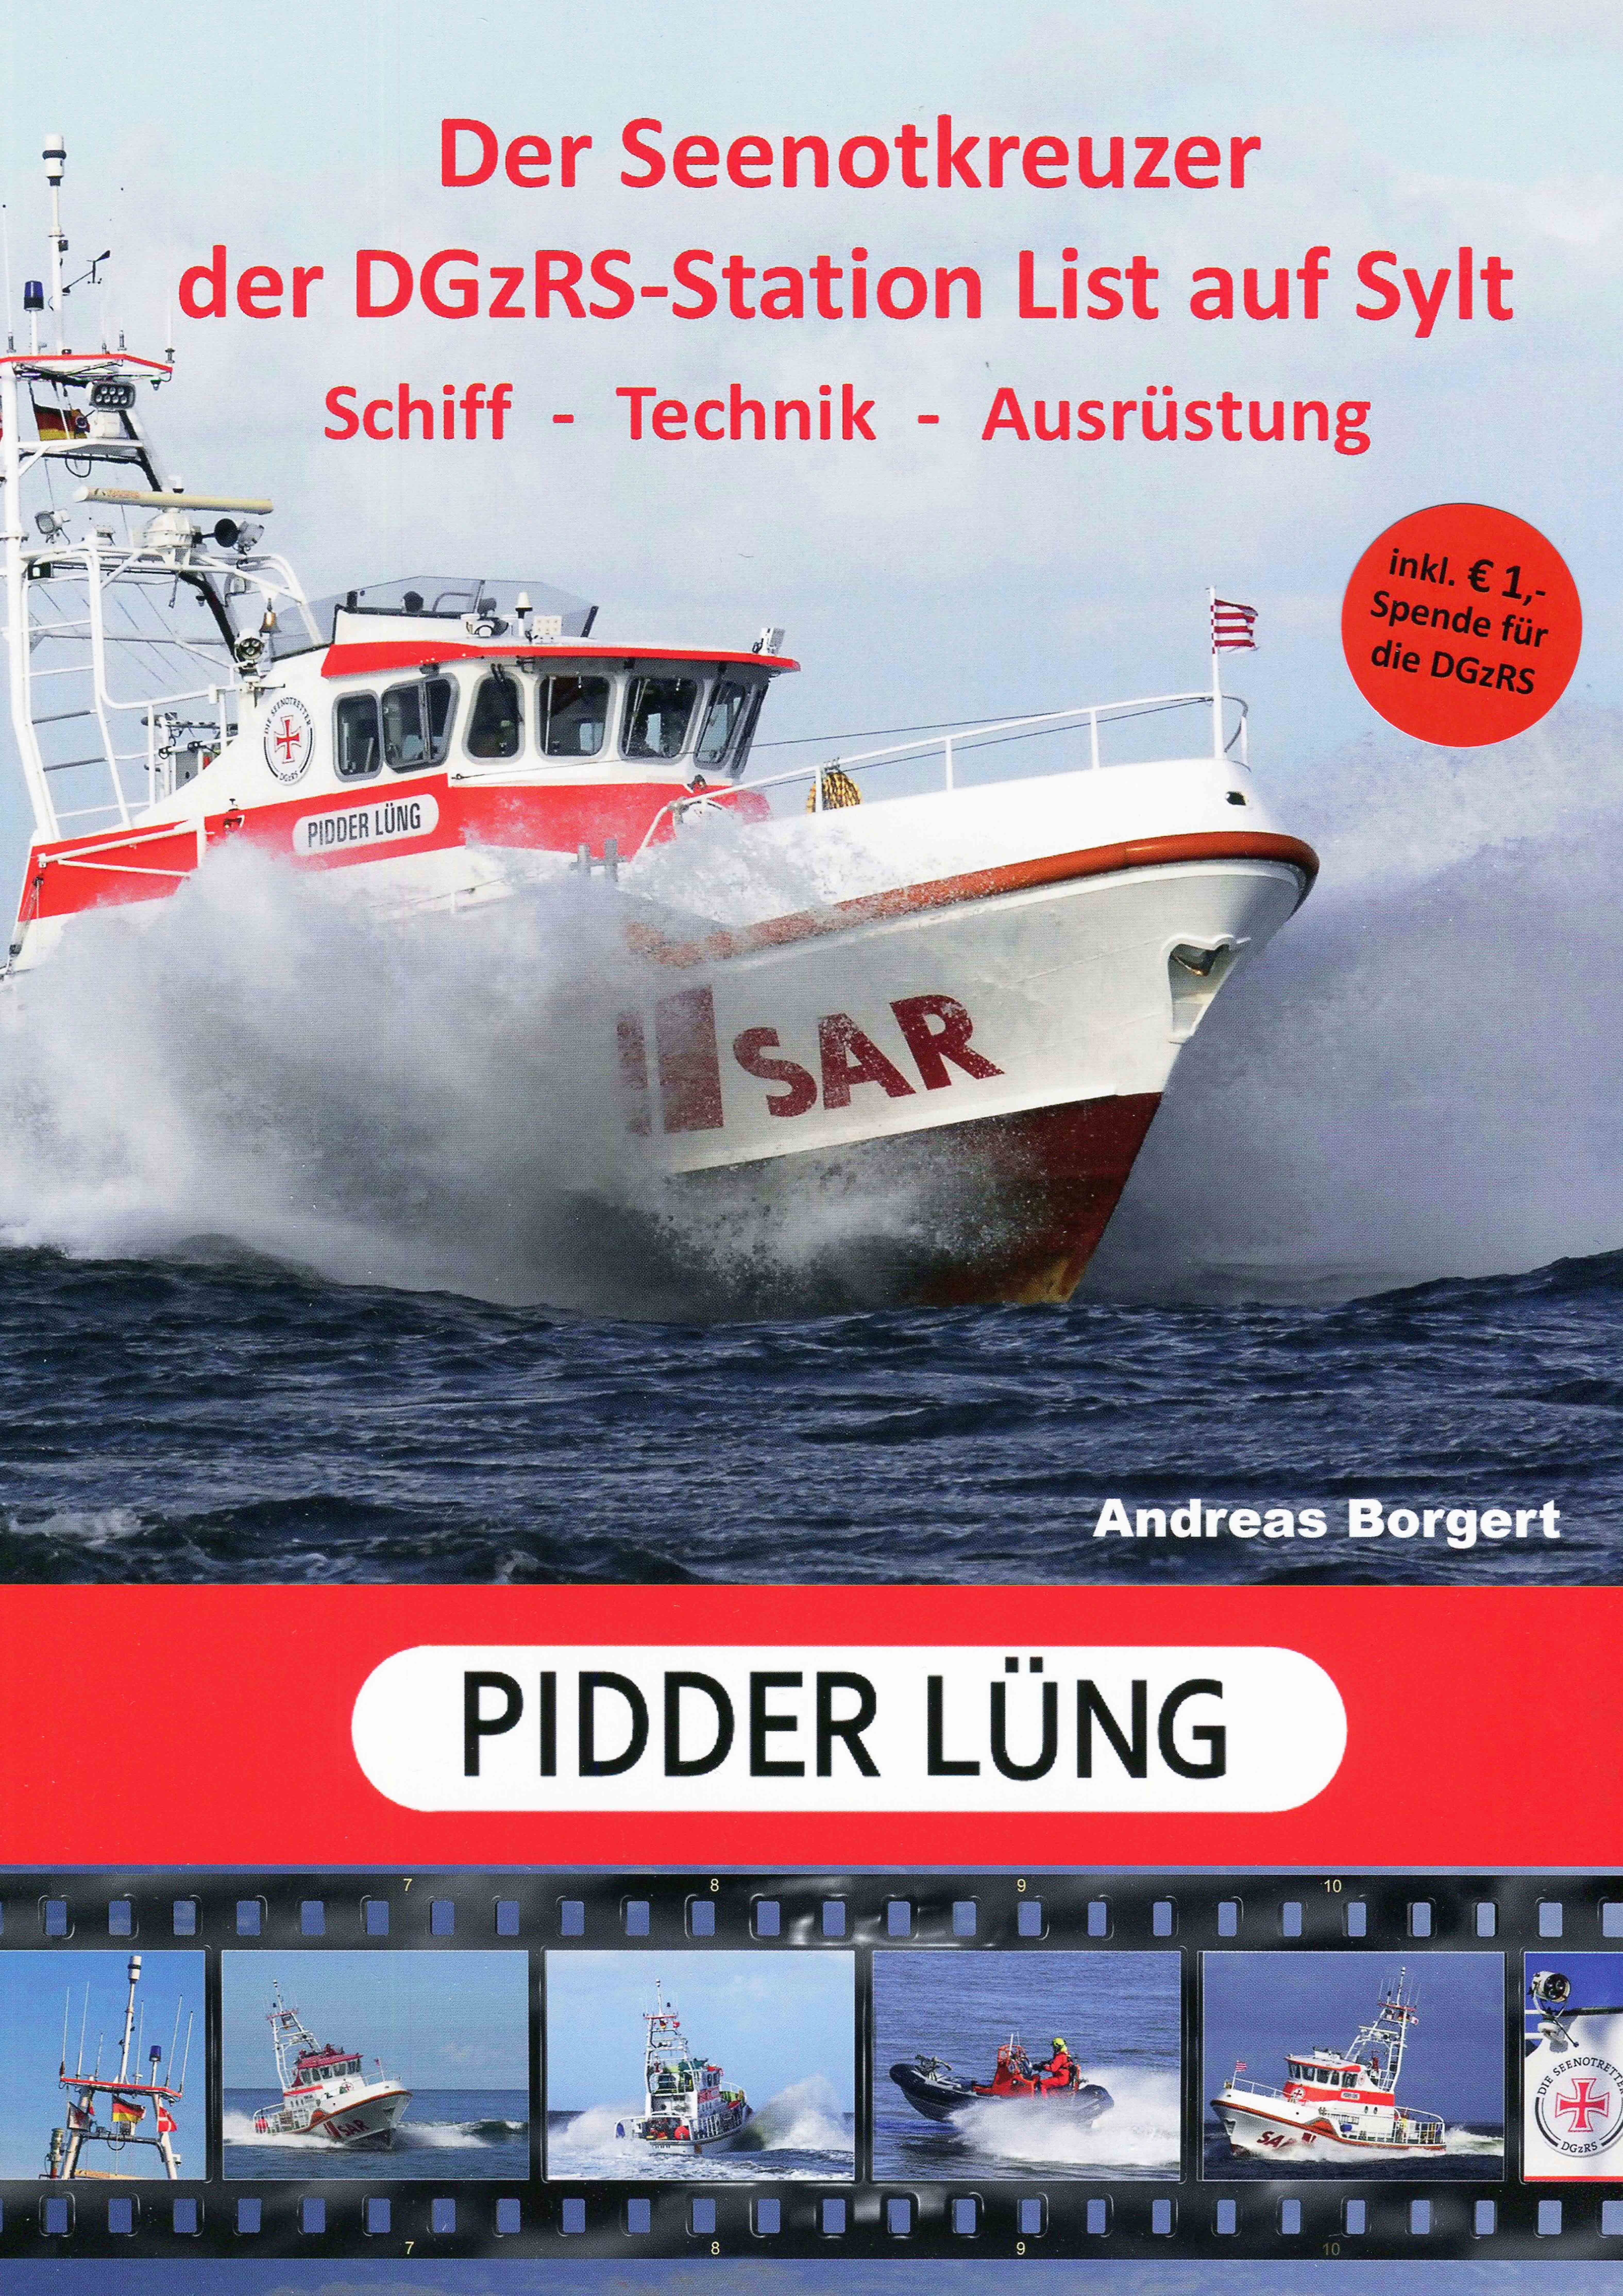 Seenotkreuzer  PIDDER LÜNG der DGzRS-Station List/Sylt